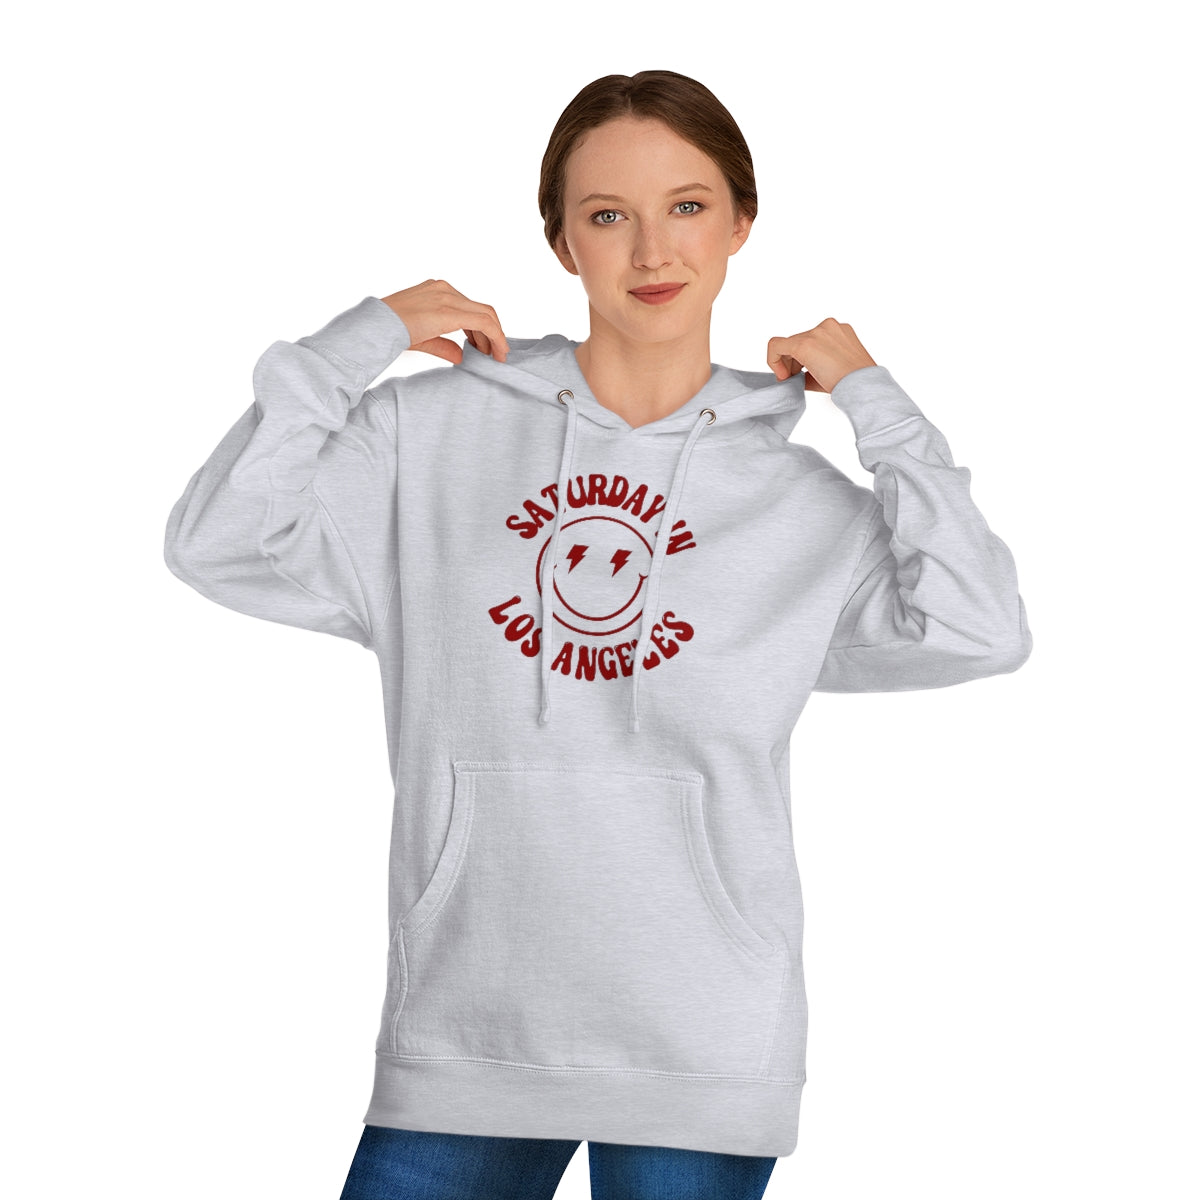 Smiley LA Hooded Sweatshirt - GG - ITC